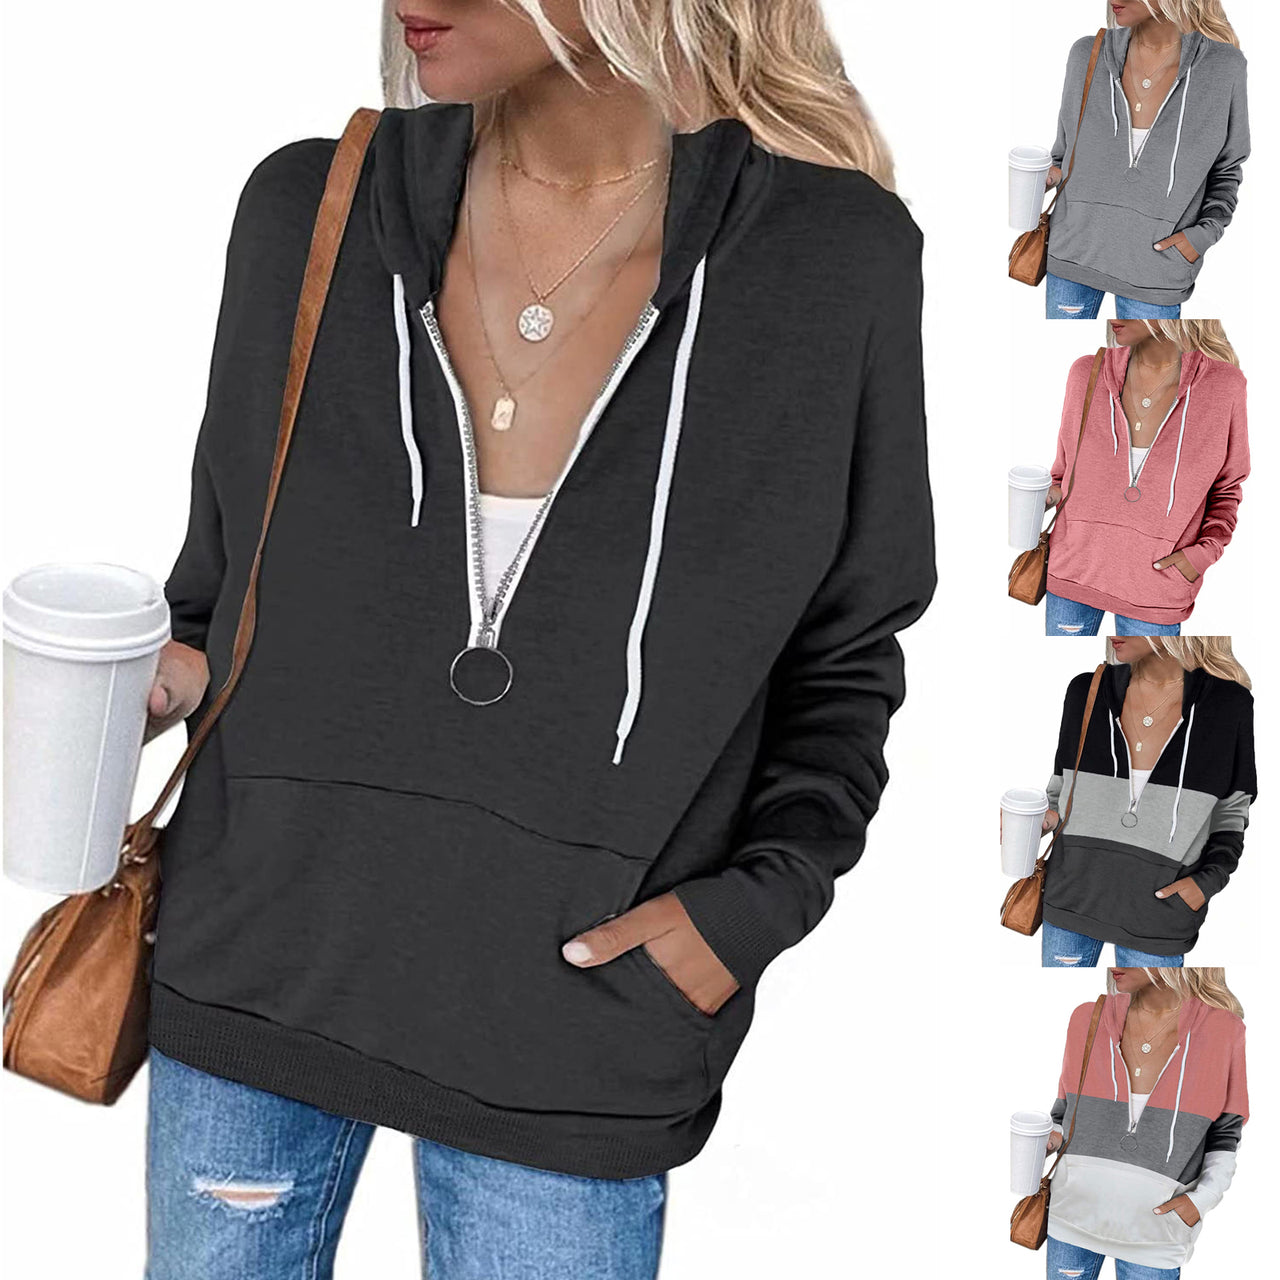 Ladies Solid Color Long Sleeve Hooded String Sweatshirt Zip Jacket